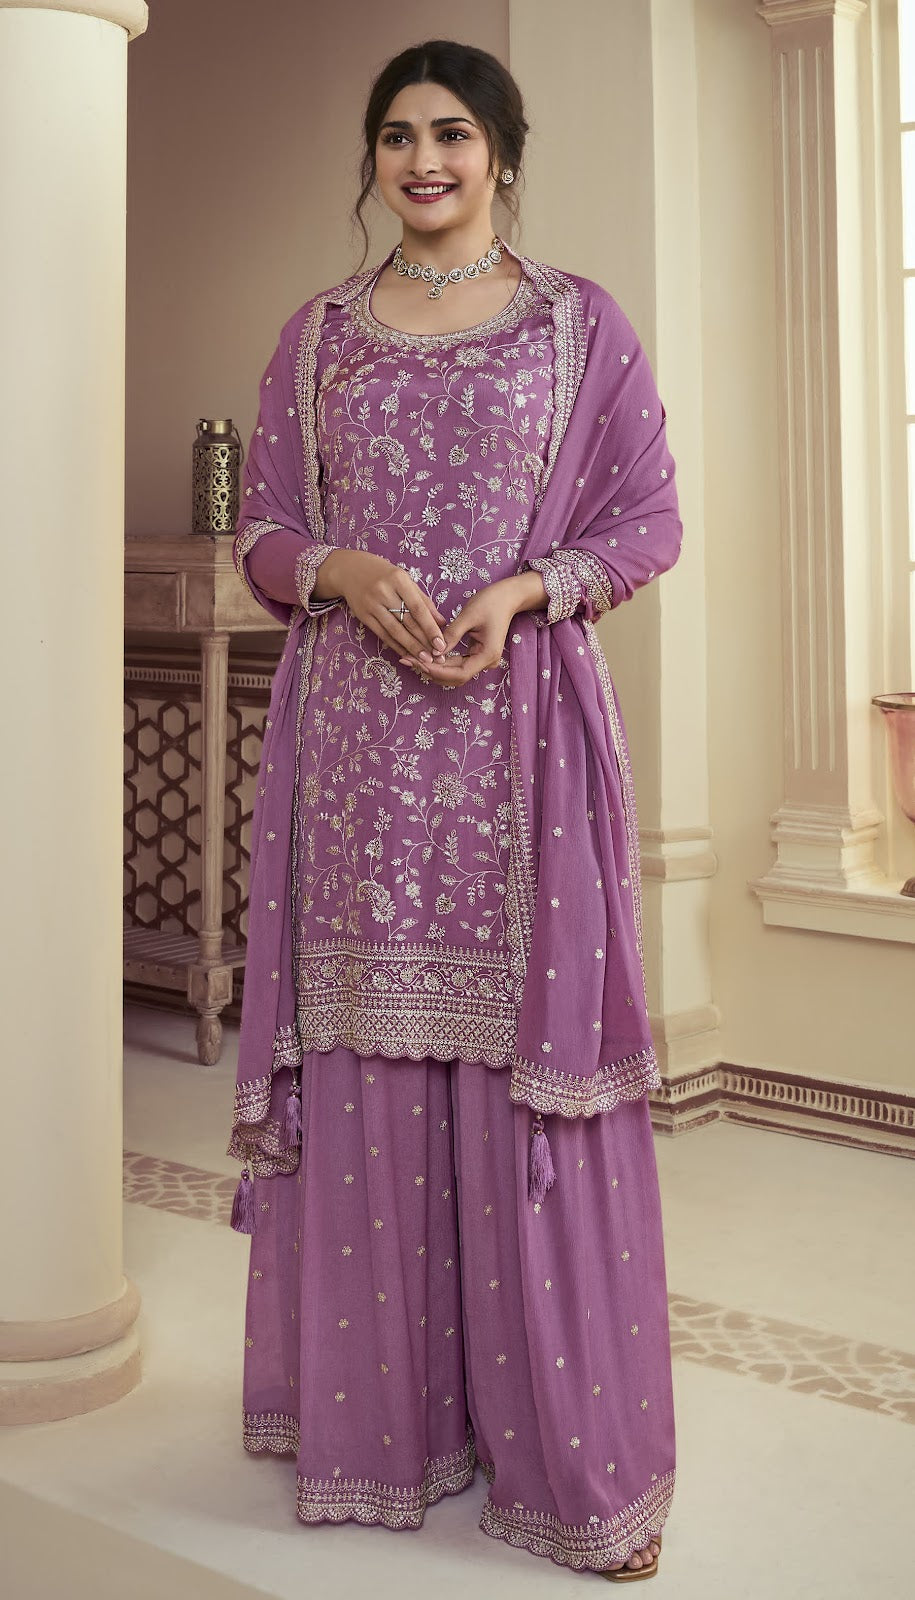 Suhaani-Kuleesh Vinay Fashion Llp Chinon Plazzo Style Suits